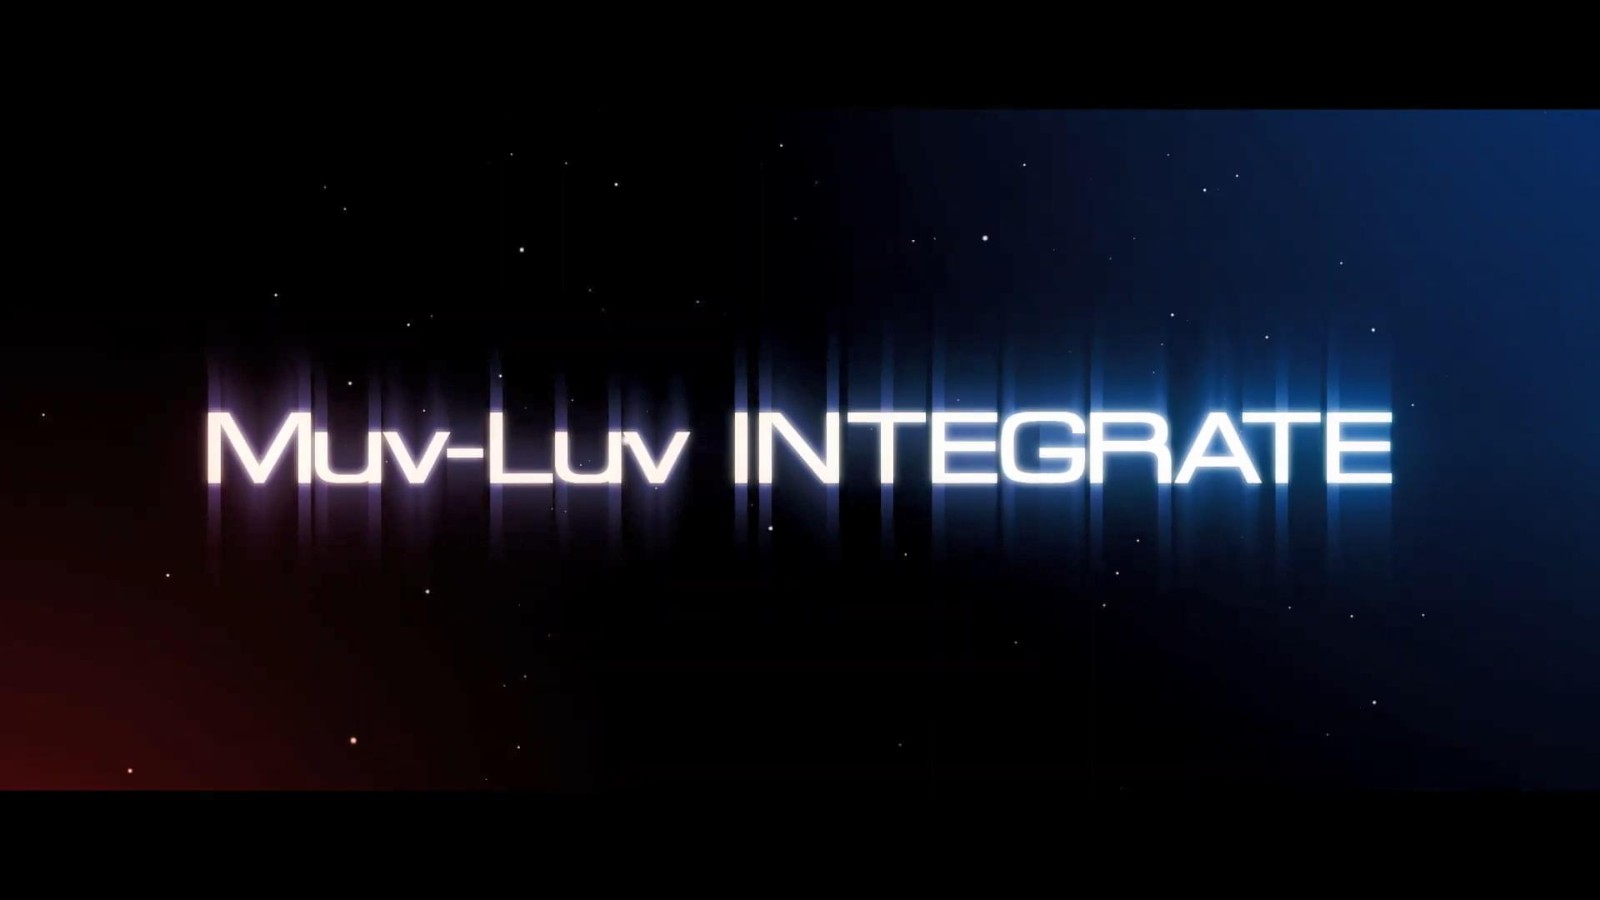 新的开始 Alternative续作《Muv-Luv INTEGRATE》公开PV